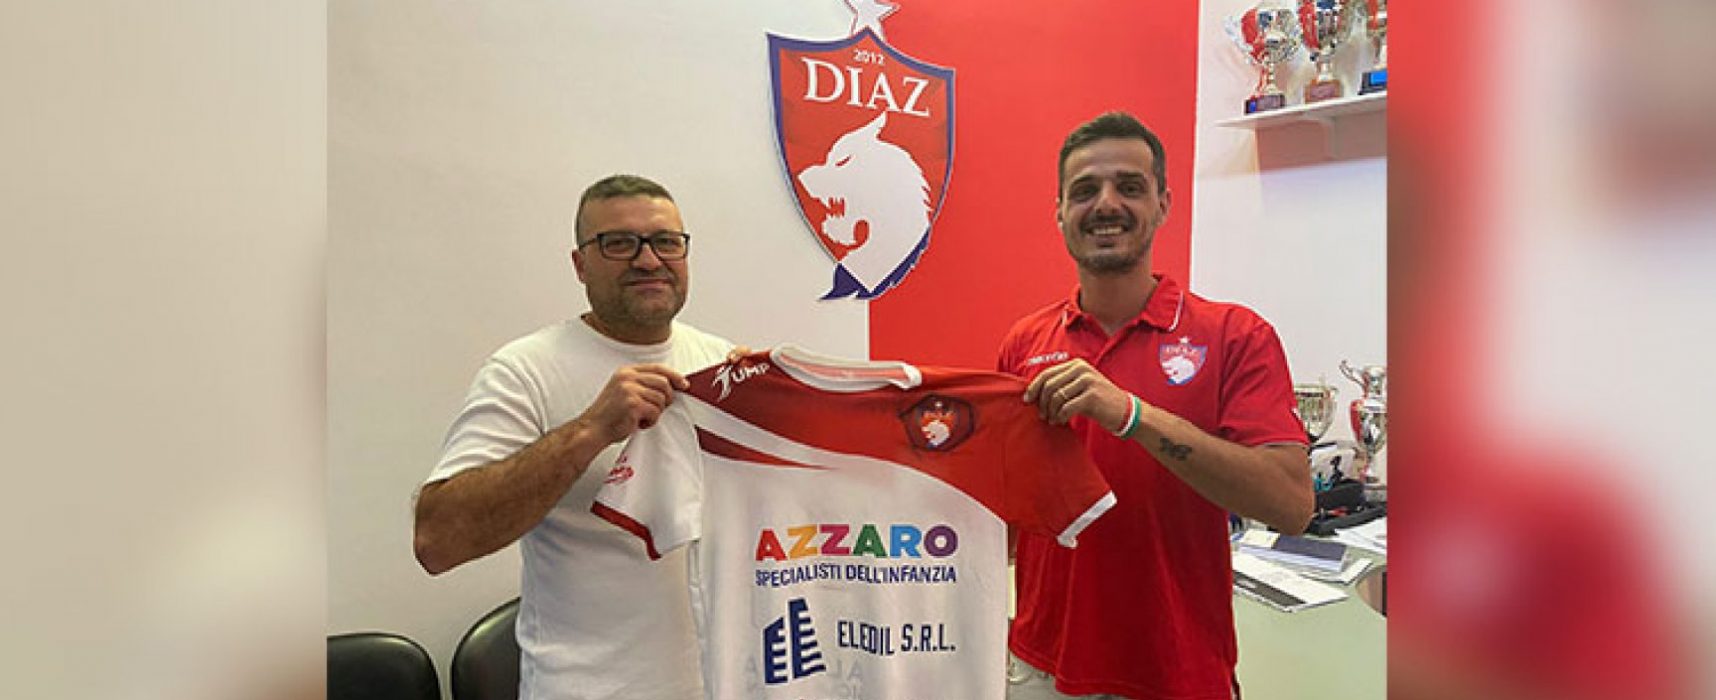 Mauro Caggianelli torna a vestire la maglia della Diaz